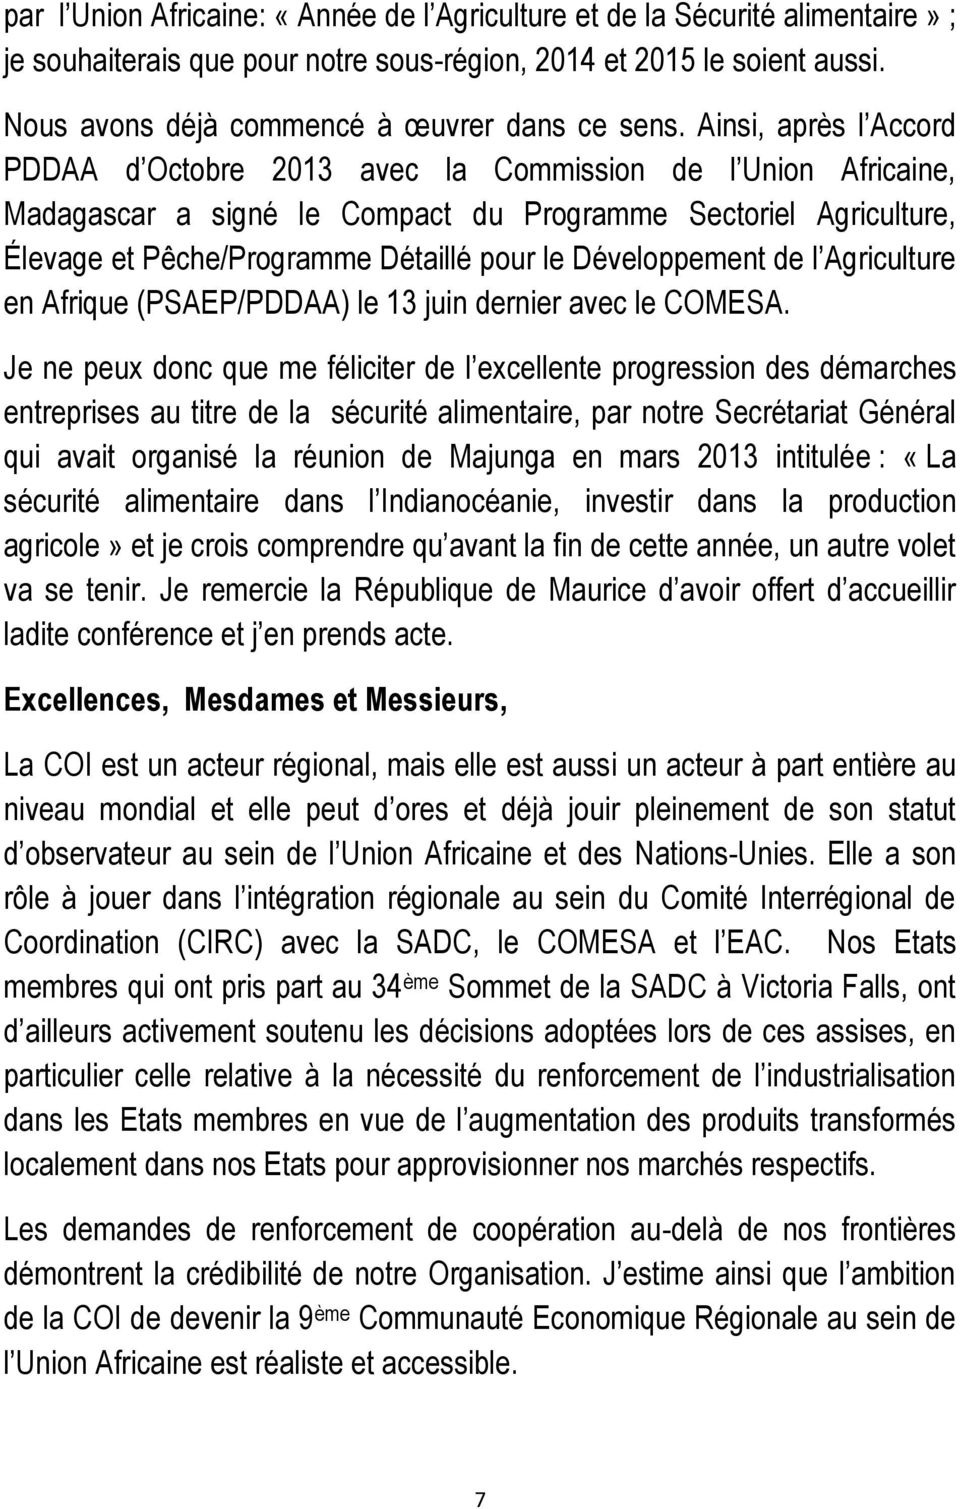 Ainsi, après l Accord PDDAA d Octobre 2013 avec la Commission de l Union Africaine, Madagascar a signé le Compact du Programme Sectoriel Agriculture, Élevage et Pêche/Programme Détaillé pour le